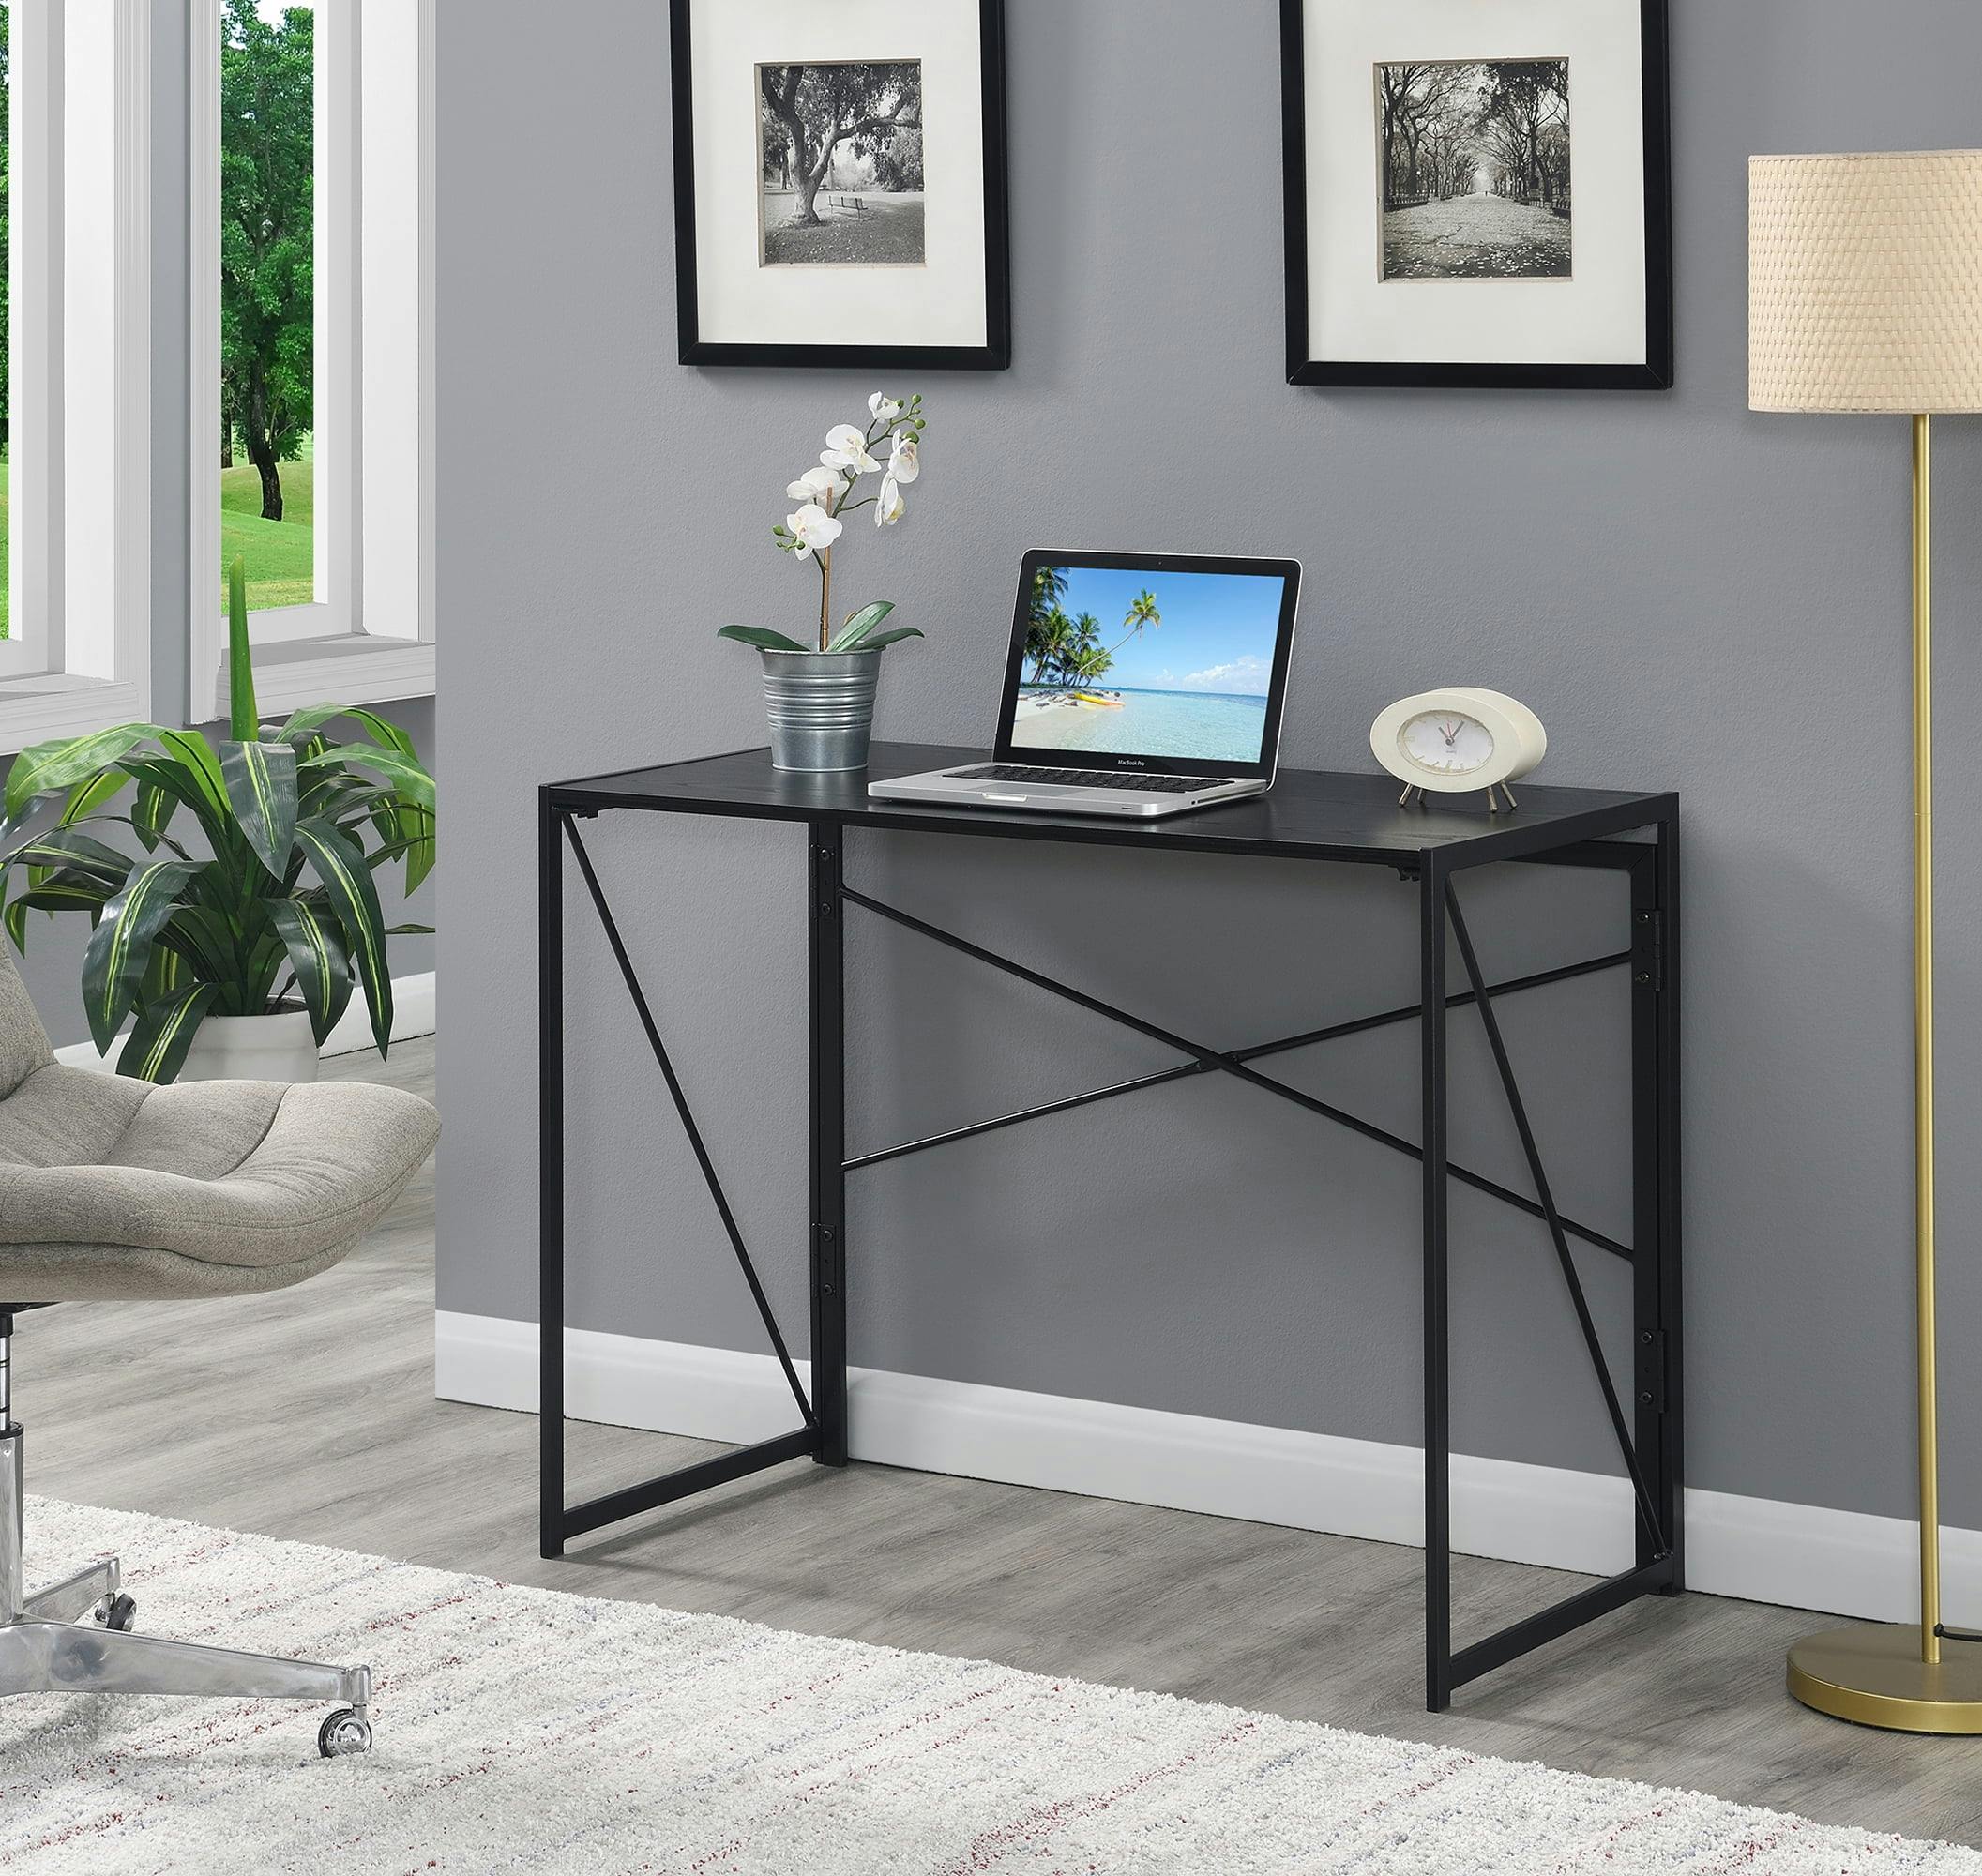 Sleek Black 40" Foldable Workspace Desk with Durable Metal Legs